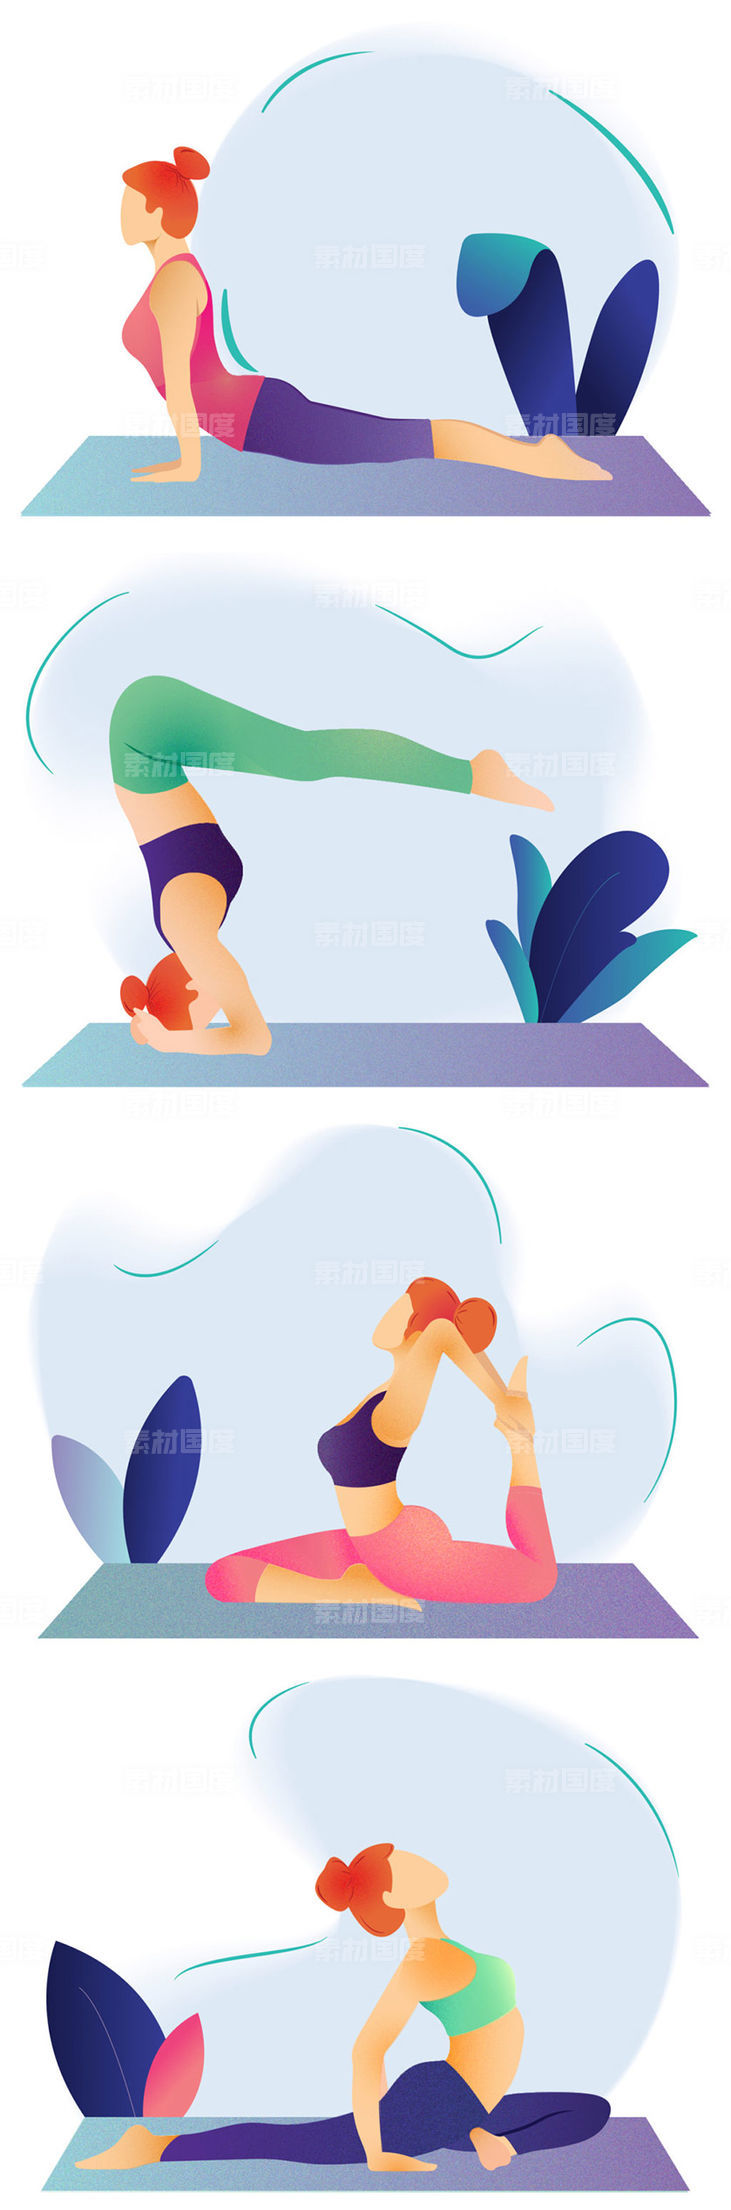 个性的瑜伽运动插画风格下载[Ai]